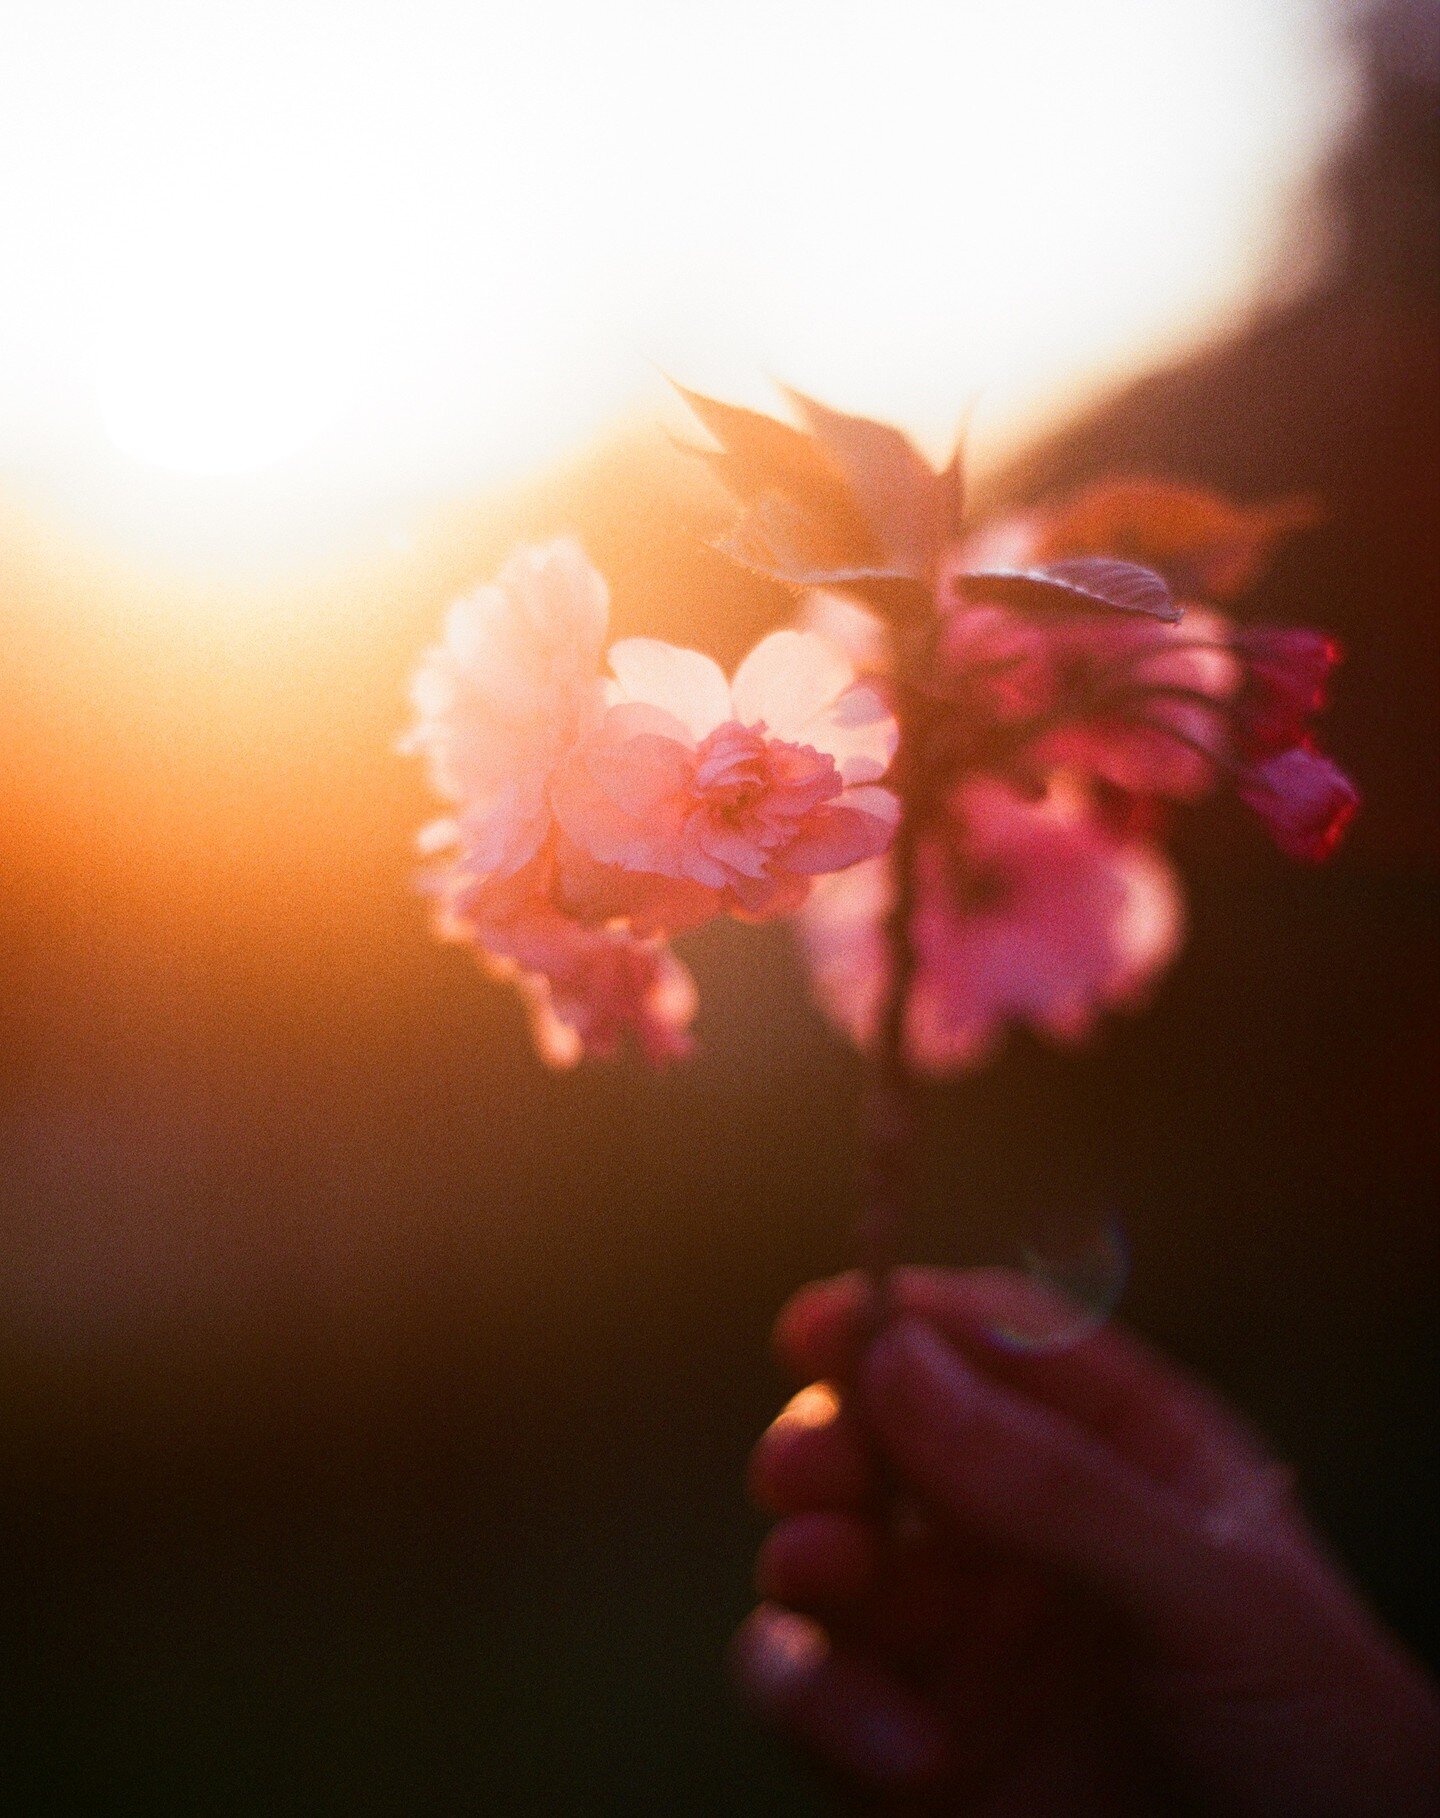 Fleurs de cerisier Lotoises 🍒
.

&Ccedil;a fait bien longtemps que je n'ai rien publi&eacute; par ici, faire du tri &ccedil;a aide &agrave; red&eacute;couvrir des photos oubli&eacute;es 🌞
- Juin 2021

#flower #summer #occitanie #goldenhour #35mm